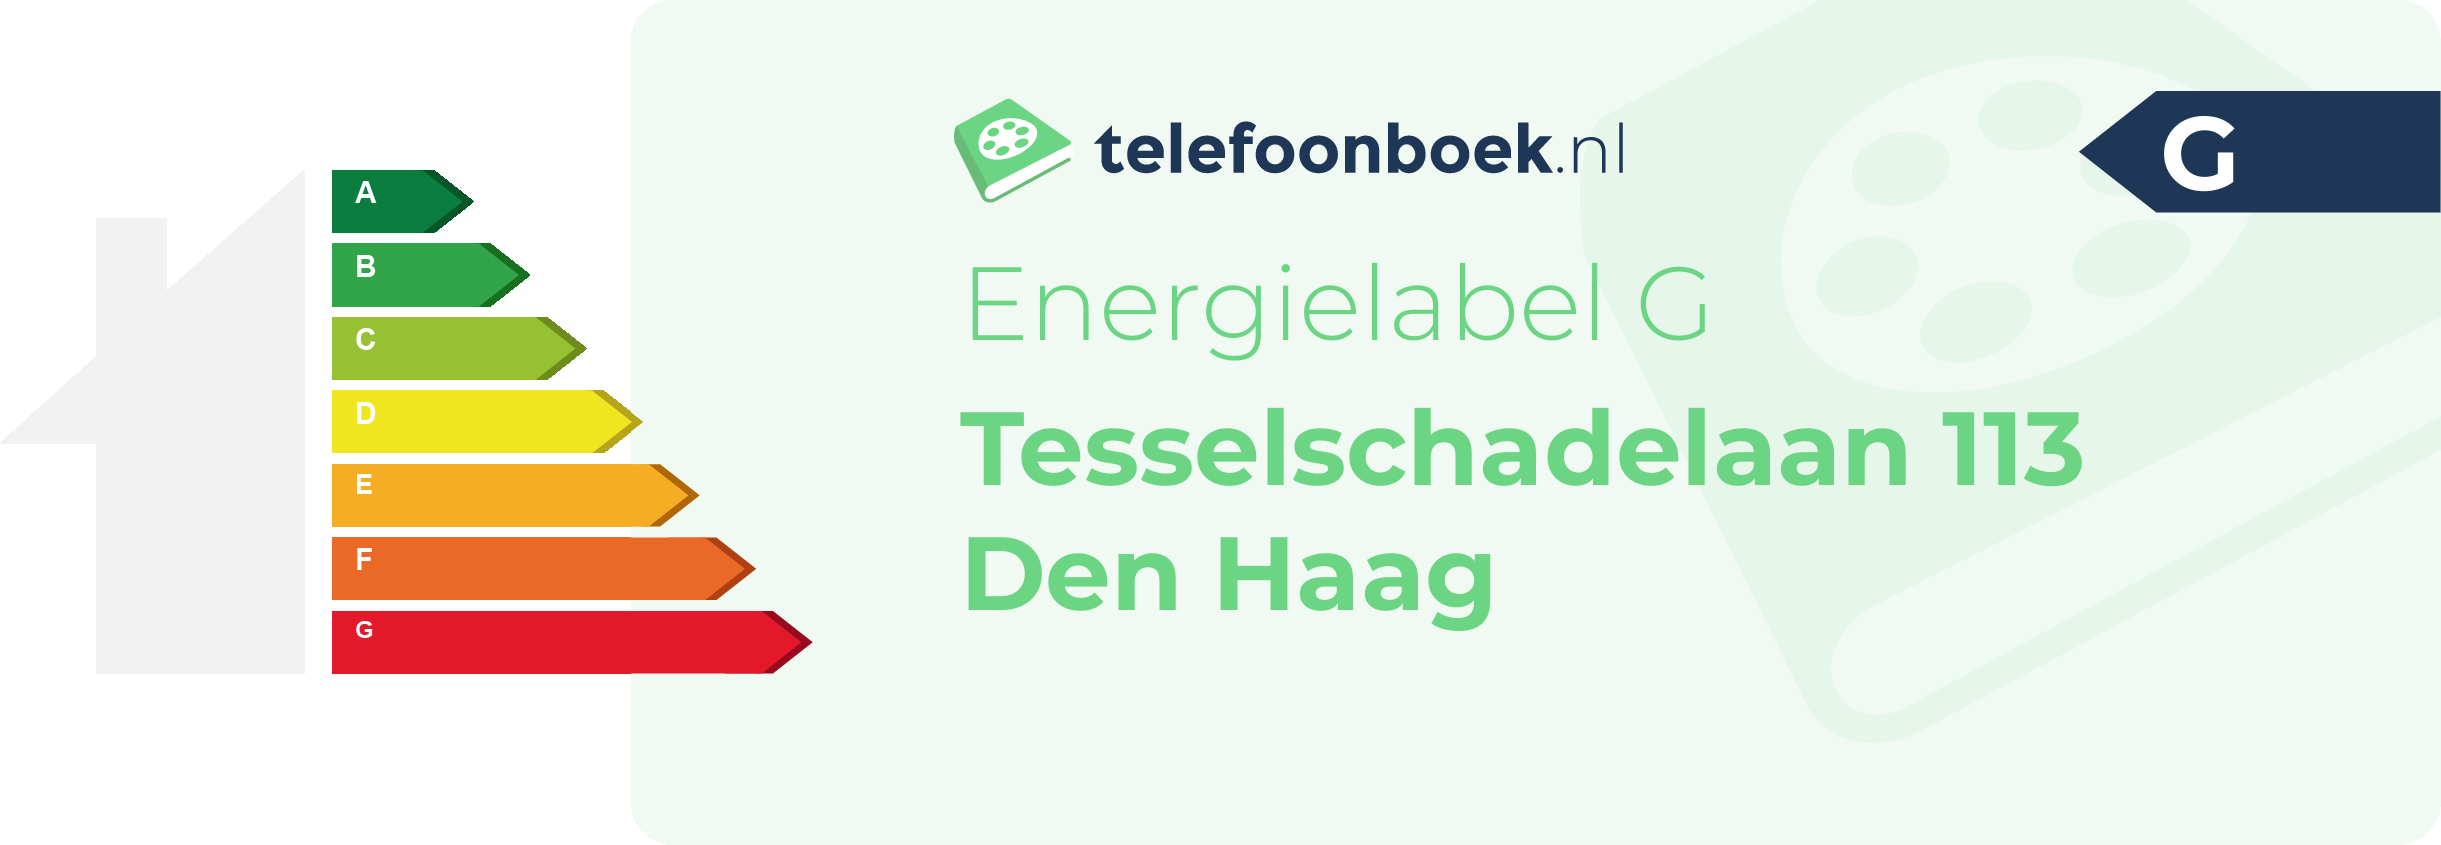 Energielabel Tesselschadelaan 113 Den Haag